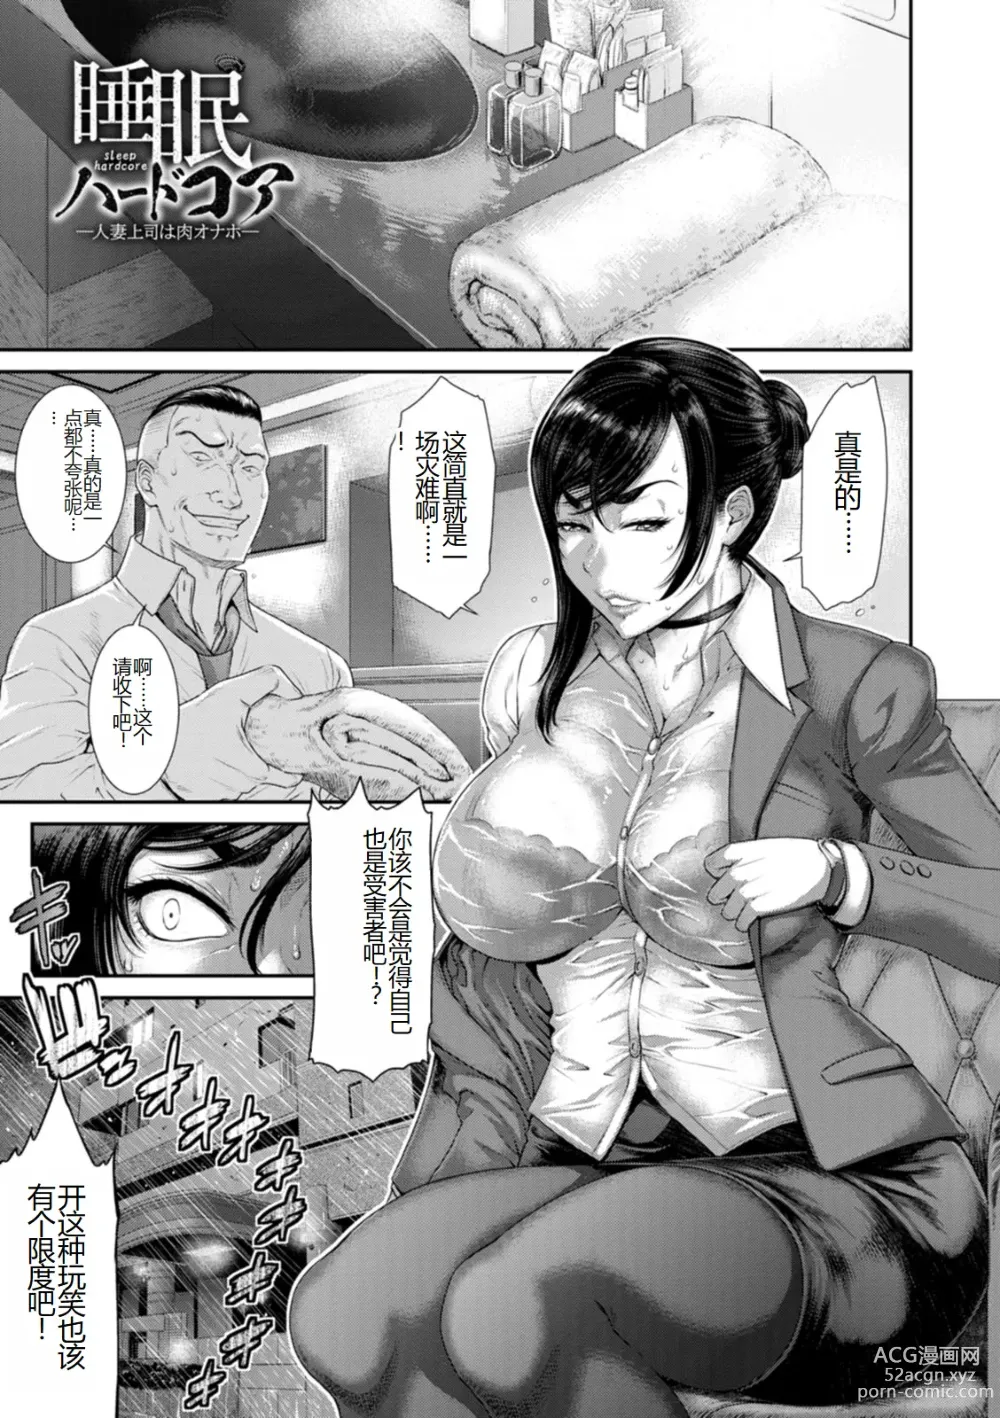 Page 29 of manga Waisetsu Box - Obscene Box